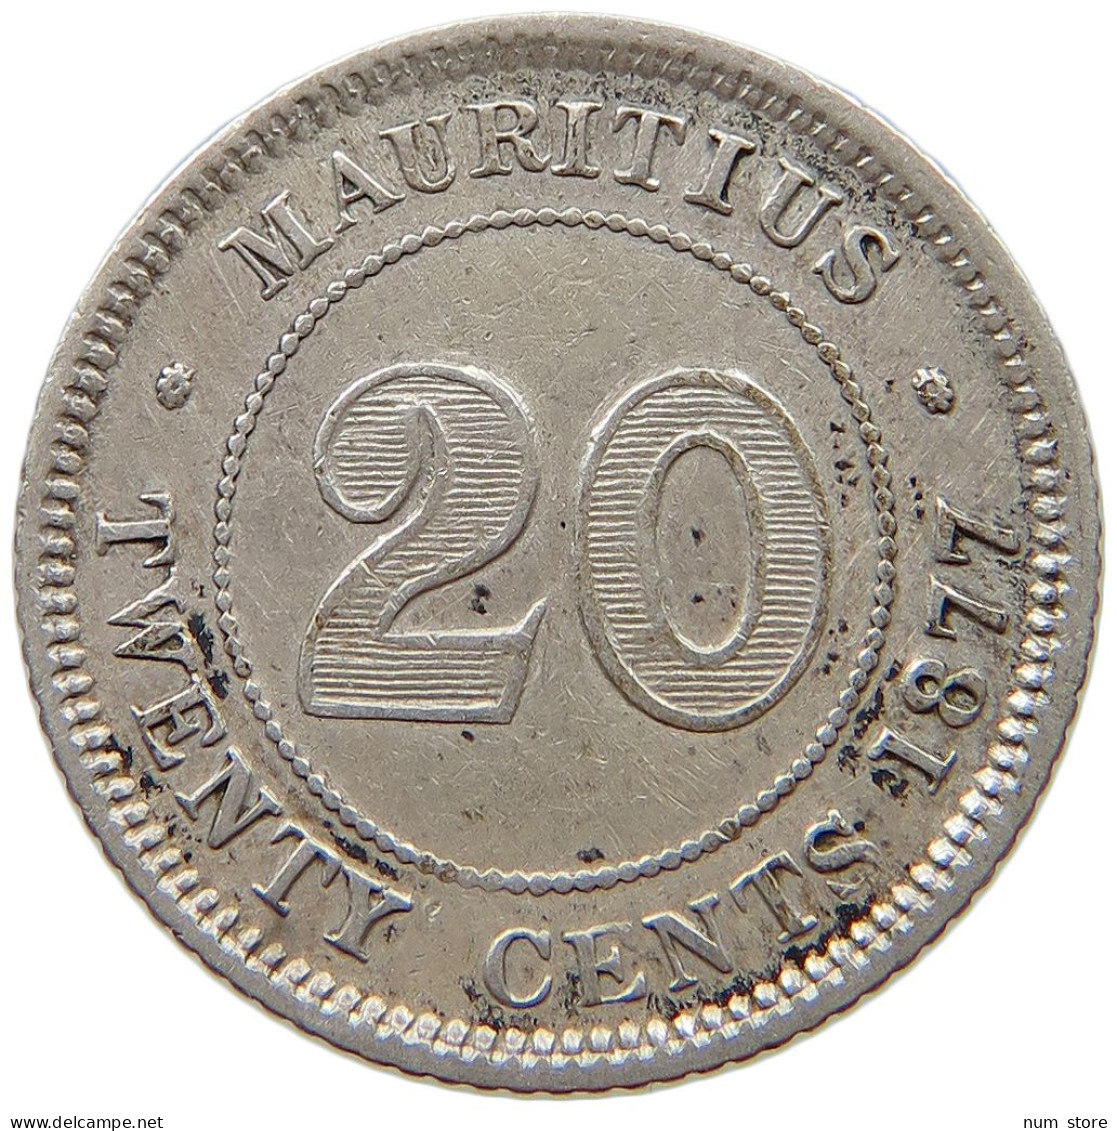 MAURITIUS 20 CENTS 1877 H Victoria 1837-1901 #t078 0279 - Mauritius